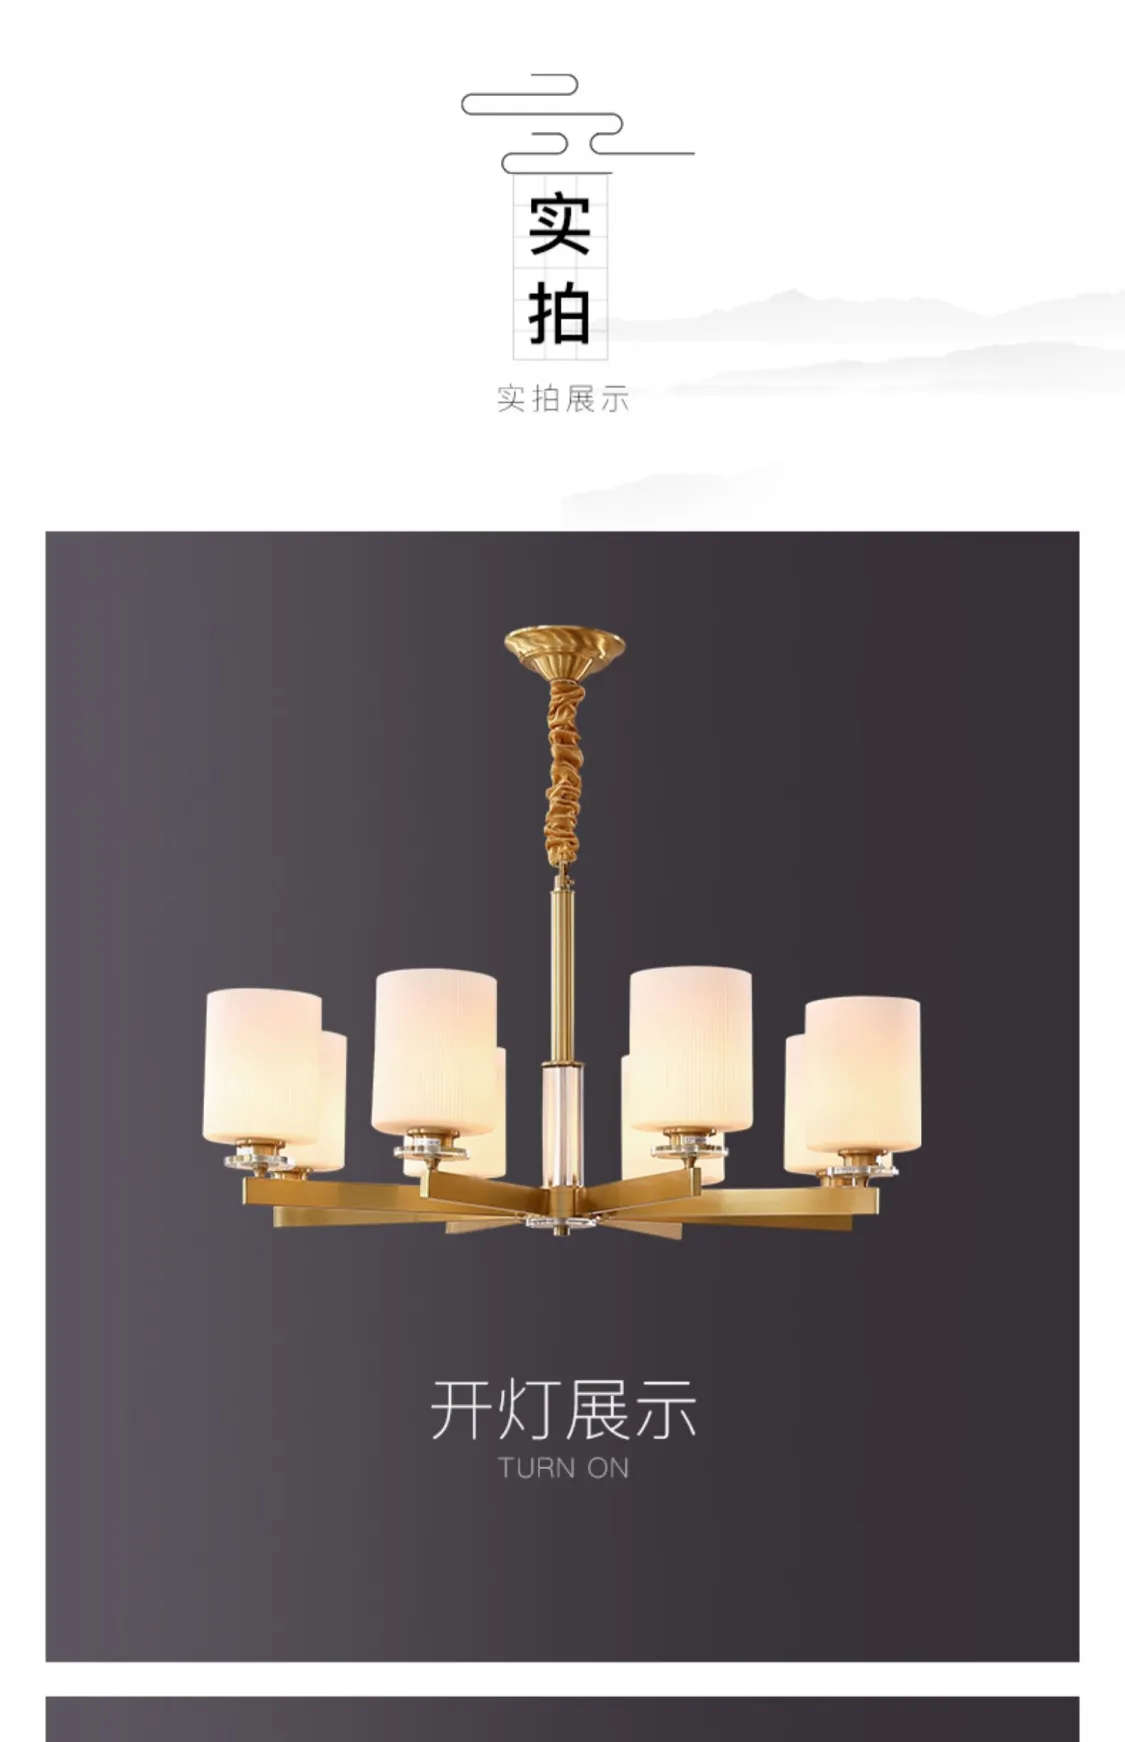 月影灯饰全铜新中式吊灯客厅灯简约现代餐厅灯中国风大气中式灯具(图14)